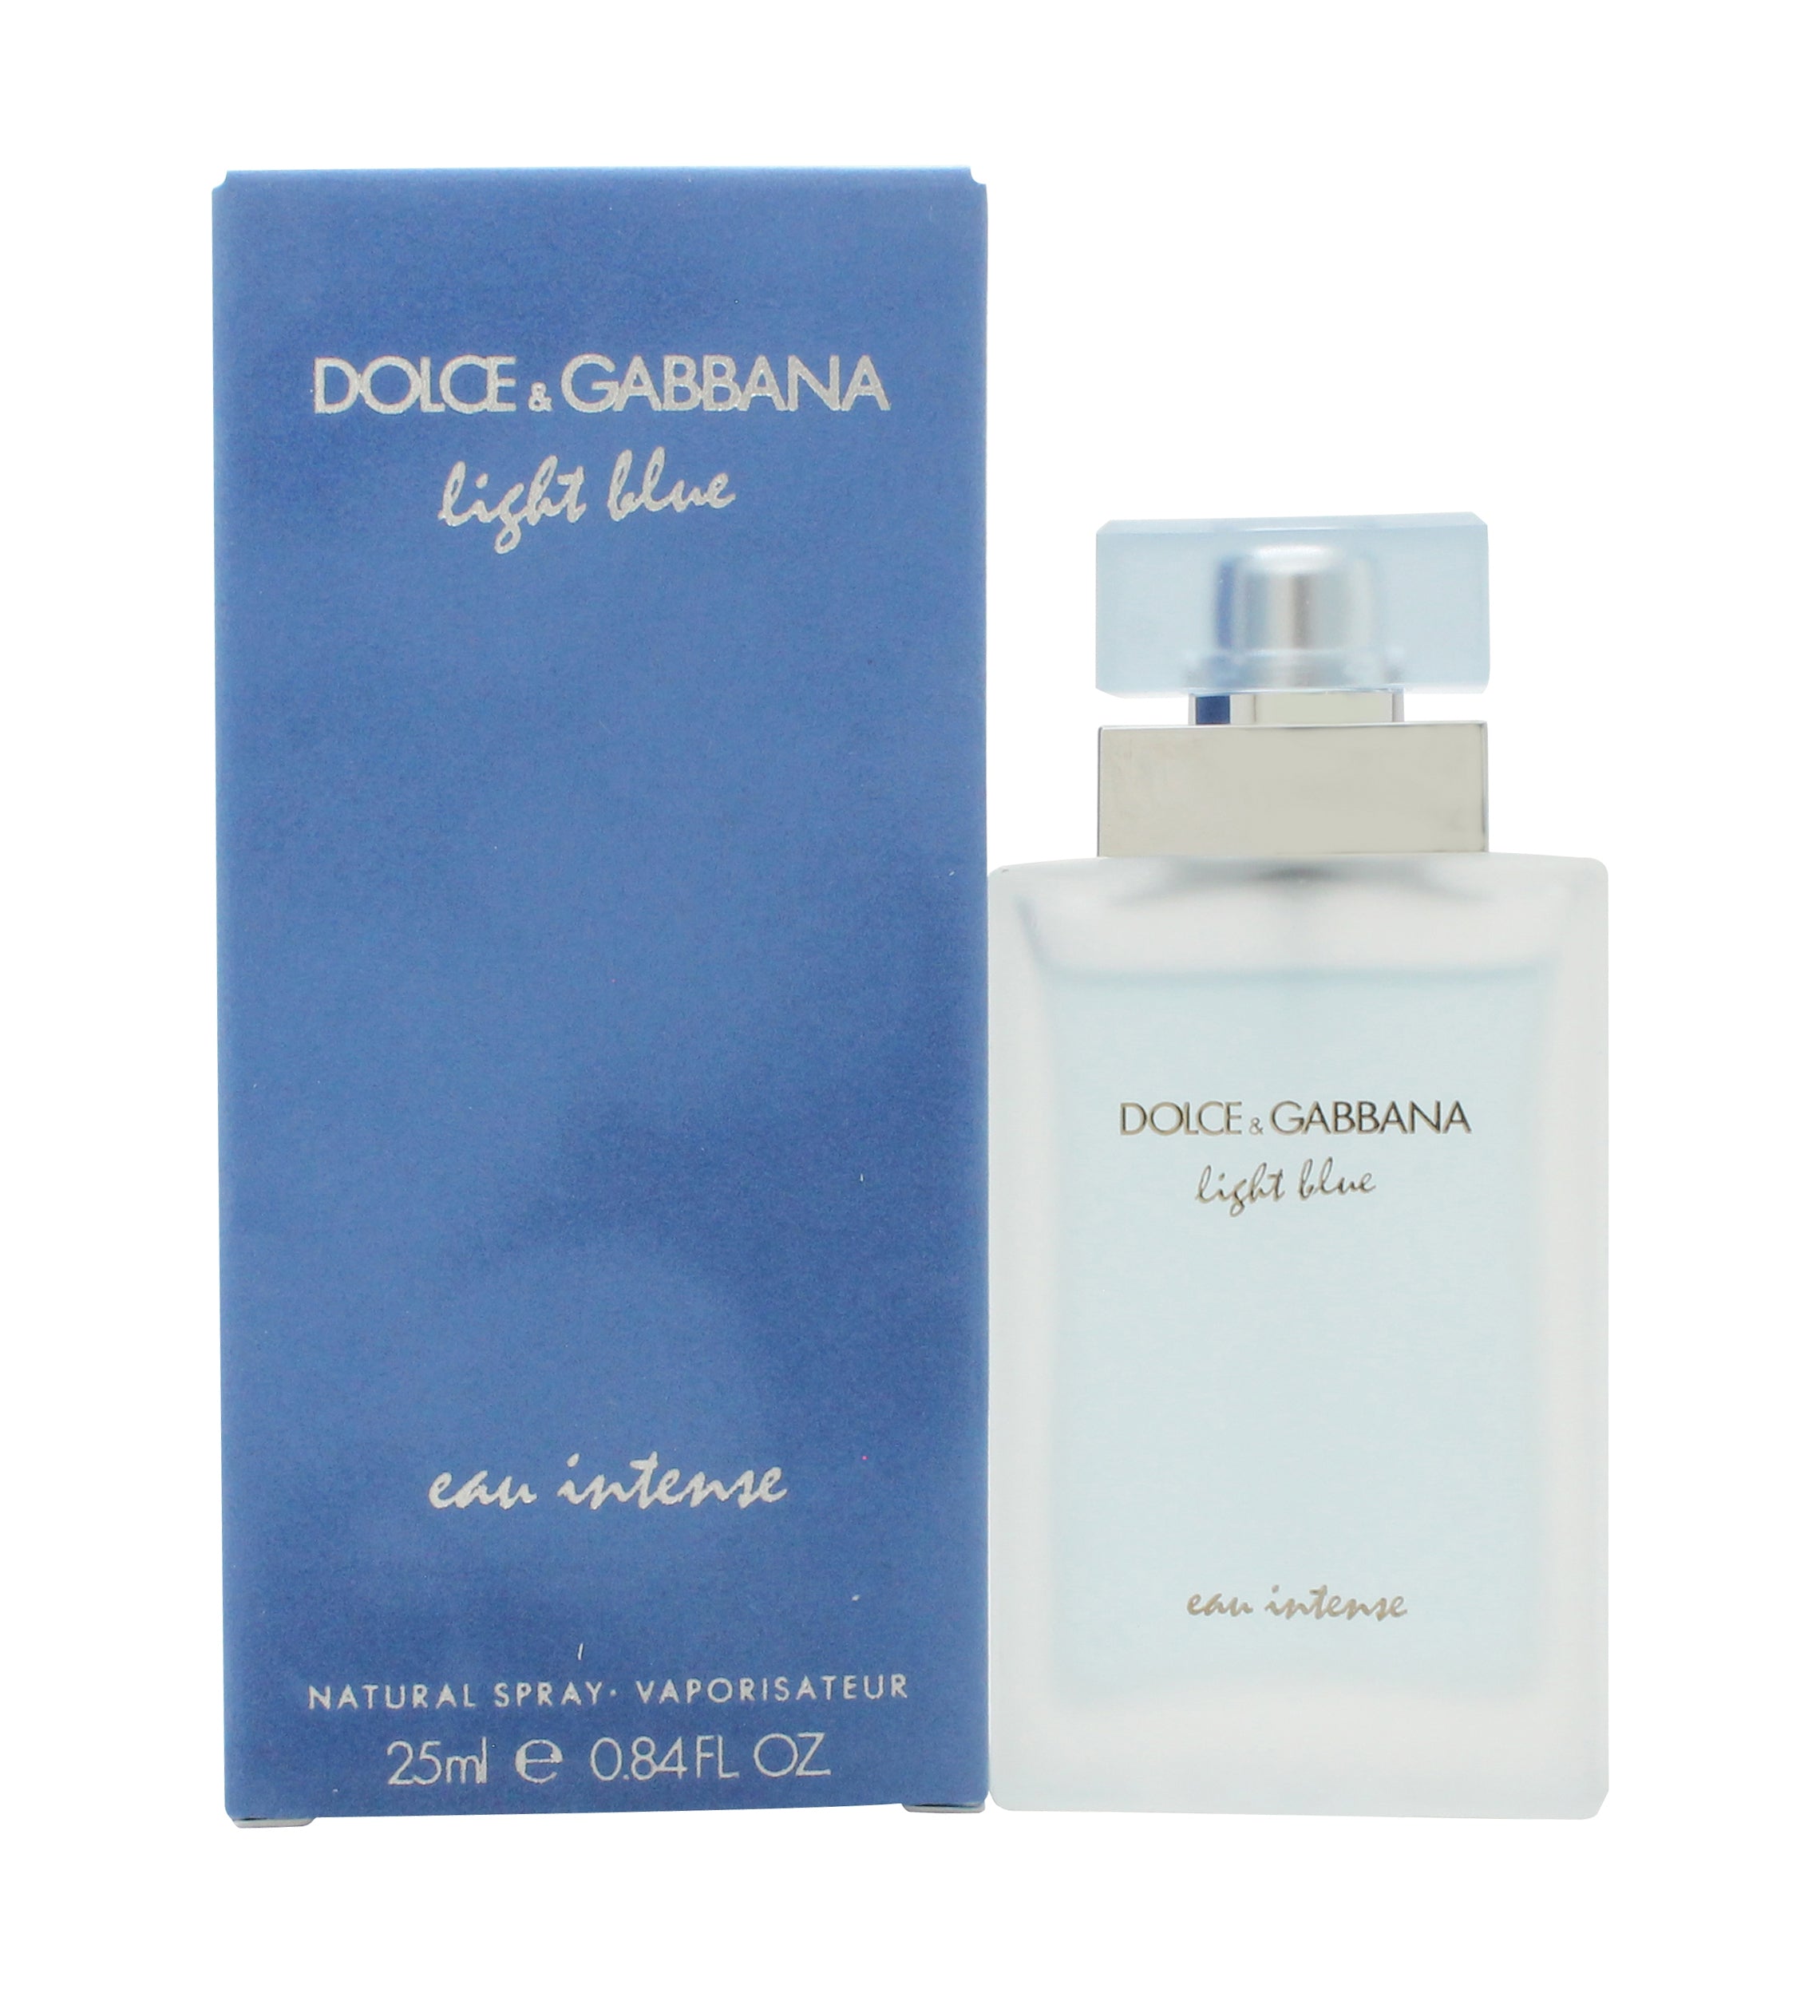 View Dolce Gabbana Light Blue Eau Intense Eau de Parfum 25ml Spray information